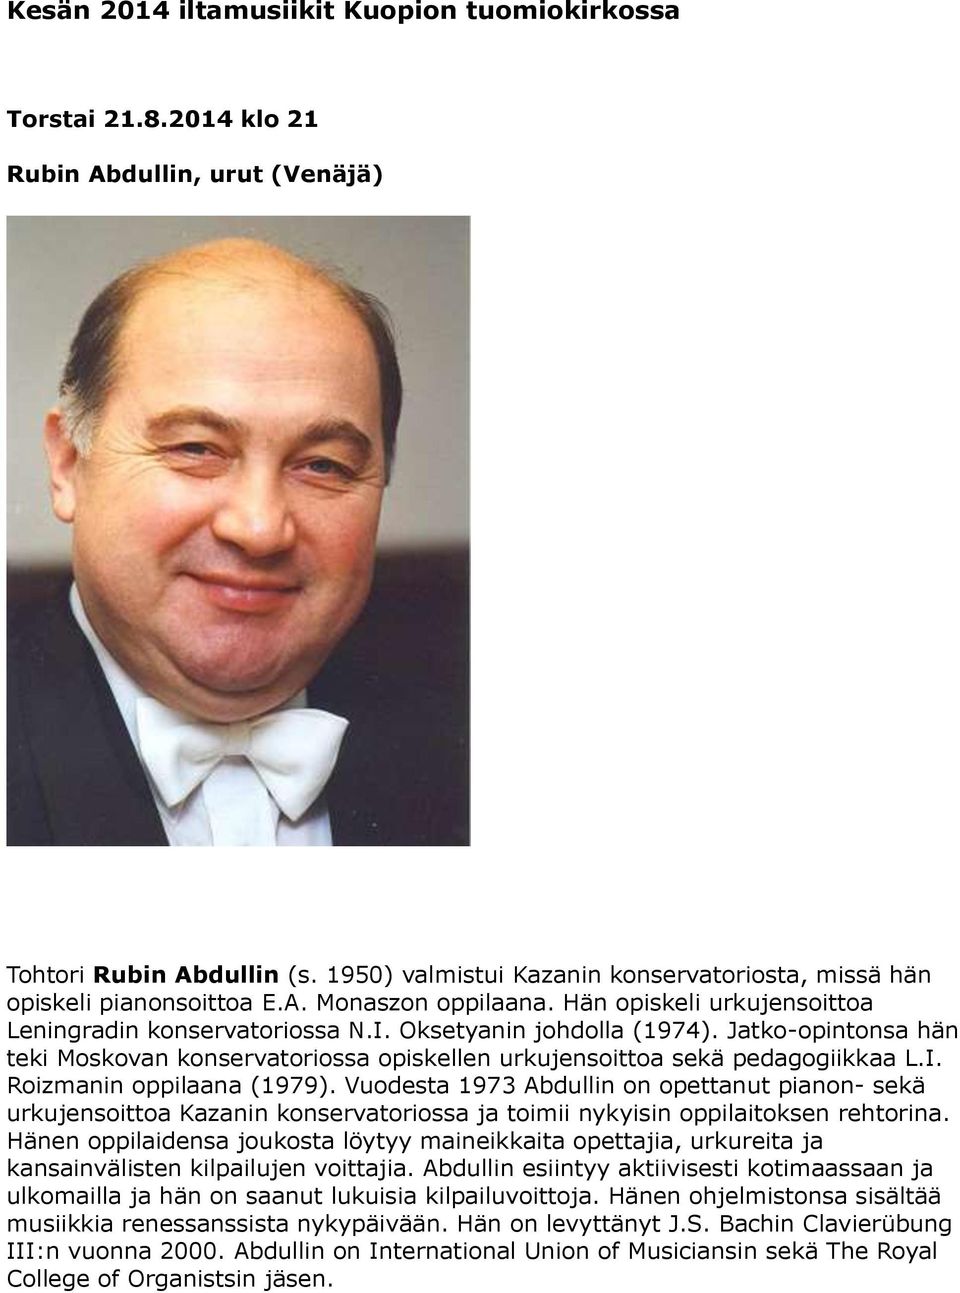 Vuodesta 1973 Abdullin on opettanut pianon- sekä urkujensoittoa Kazanin konservatoriossa ja toimii nykyisin oppilaitoksen rehtorina.